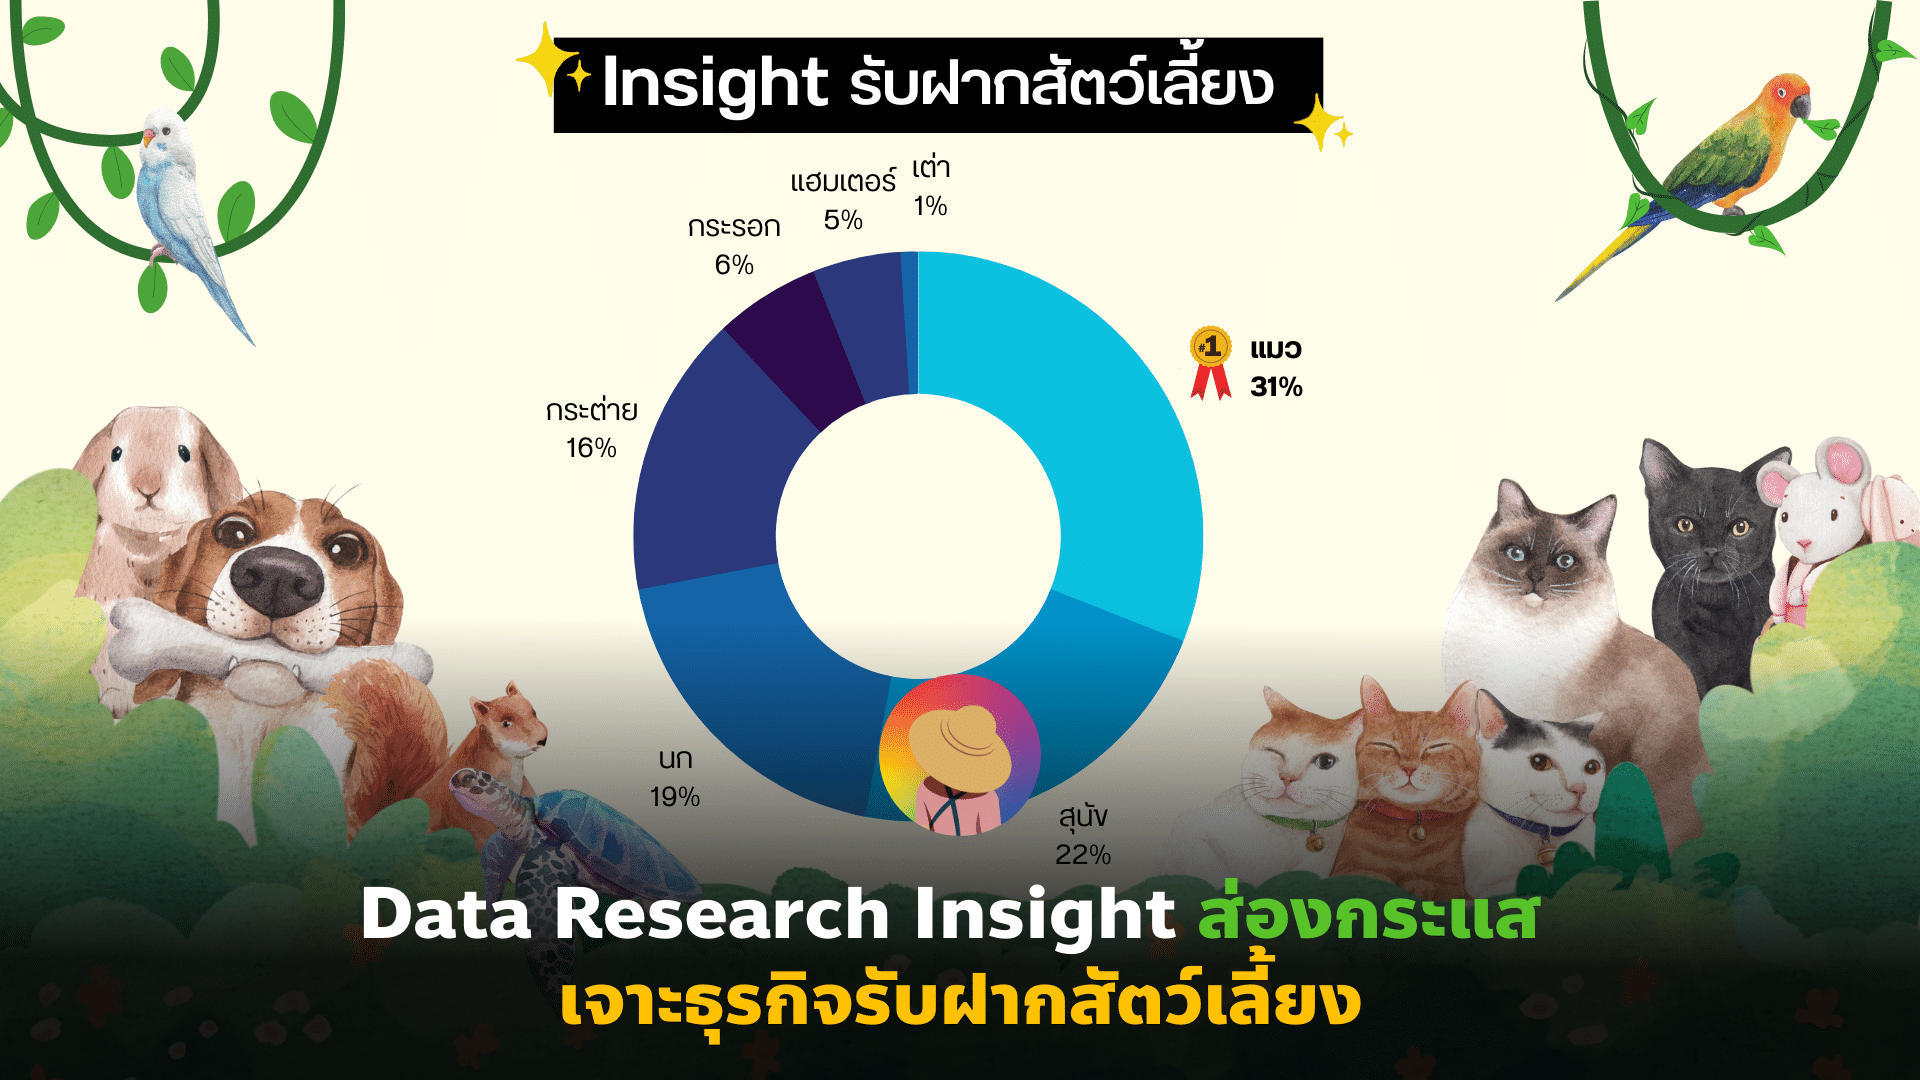 Data Research Insight ส่องกระแส เจาะธุรกิจ รับฝากสัตว์เลี้ยง